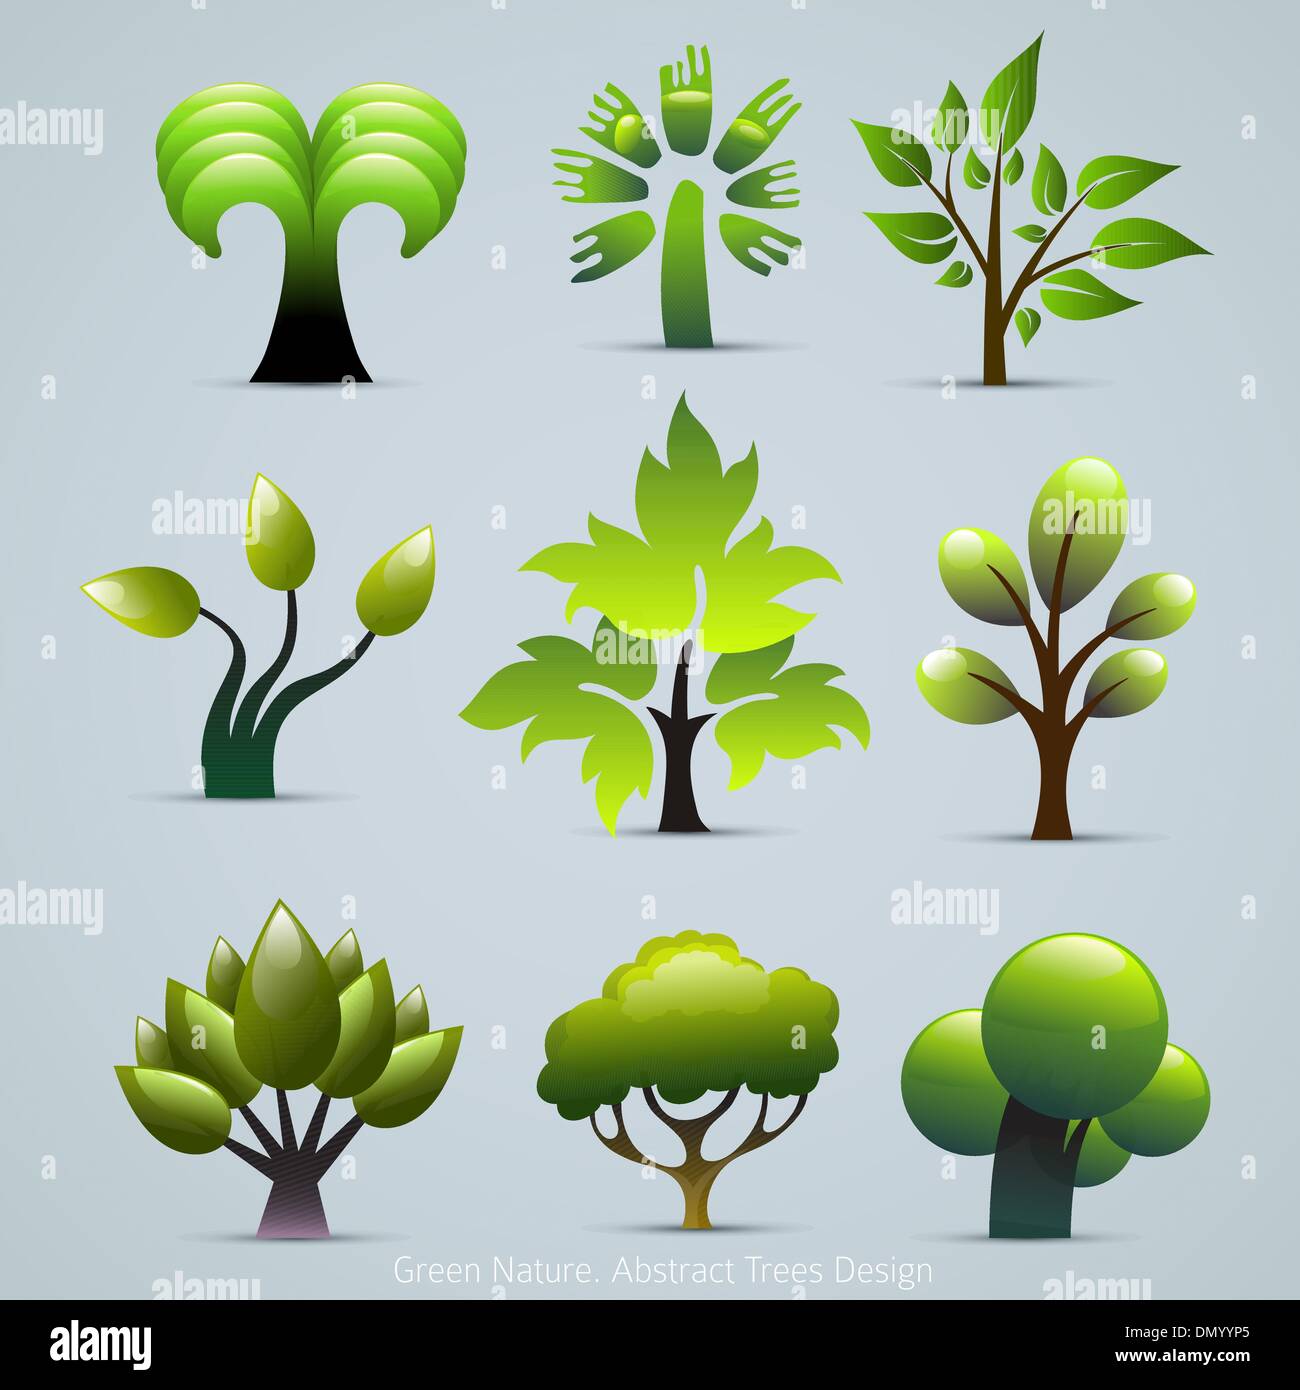 Grüner Baum Pflanzen Illustration. Abstrakte Natur-Vektor-Icons Stock Vektor